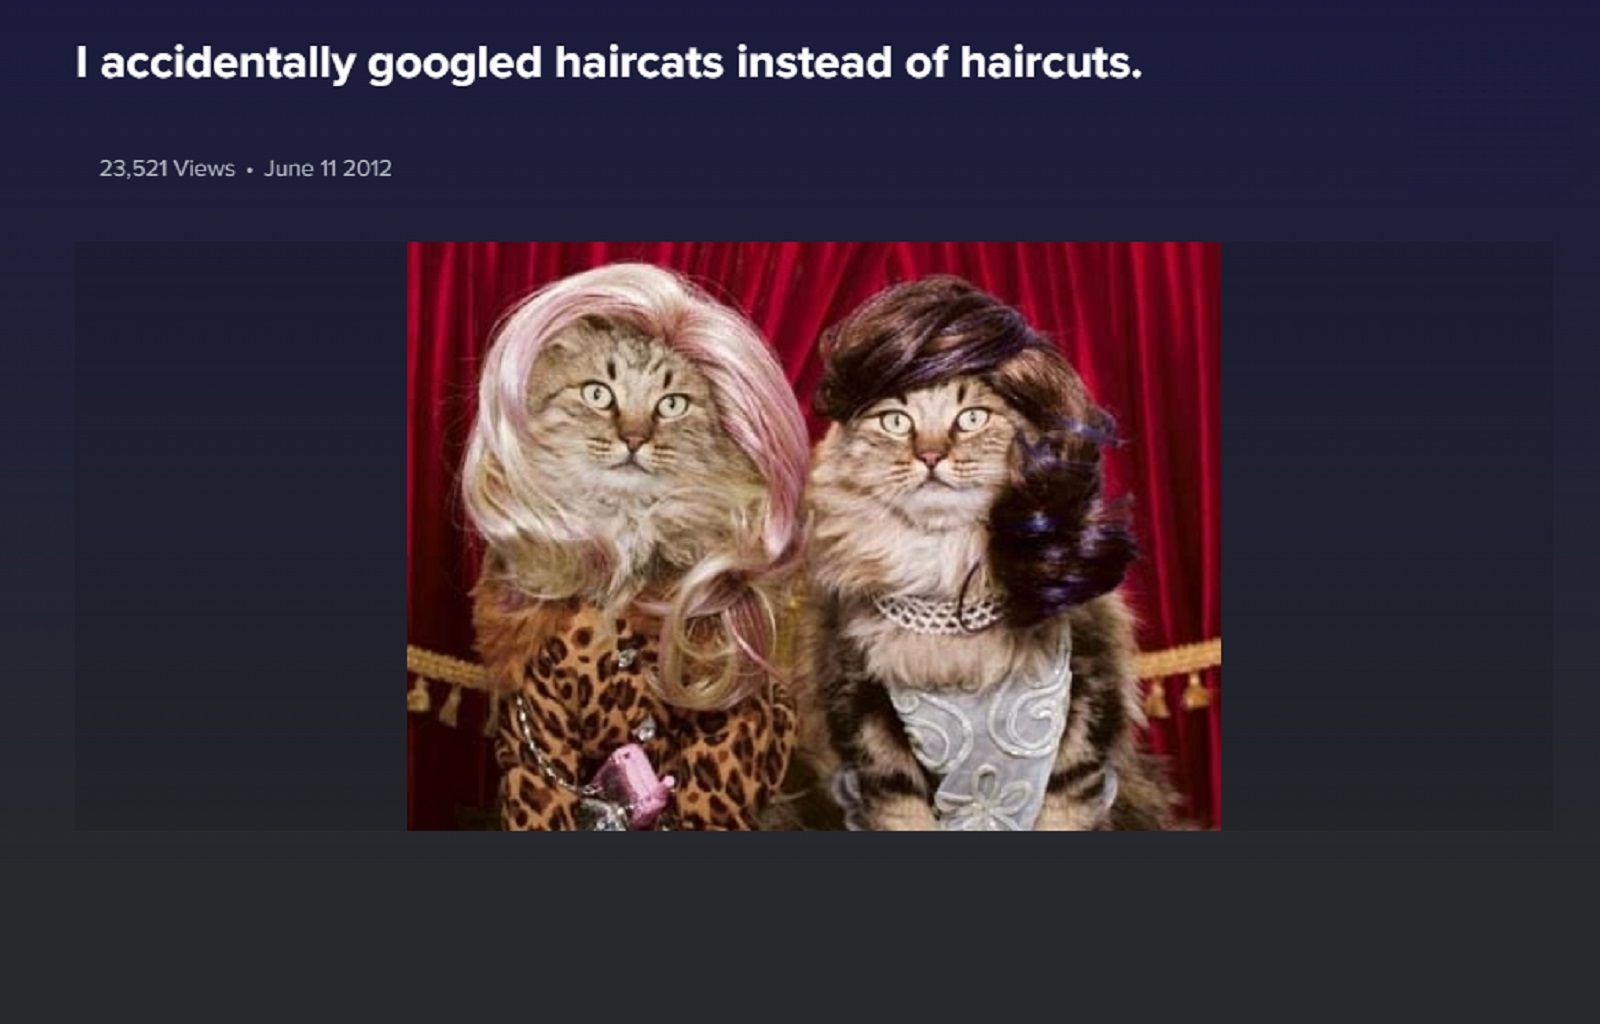 haircats